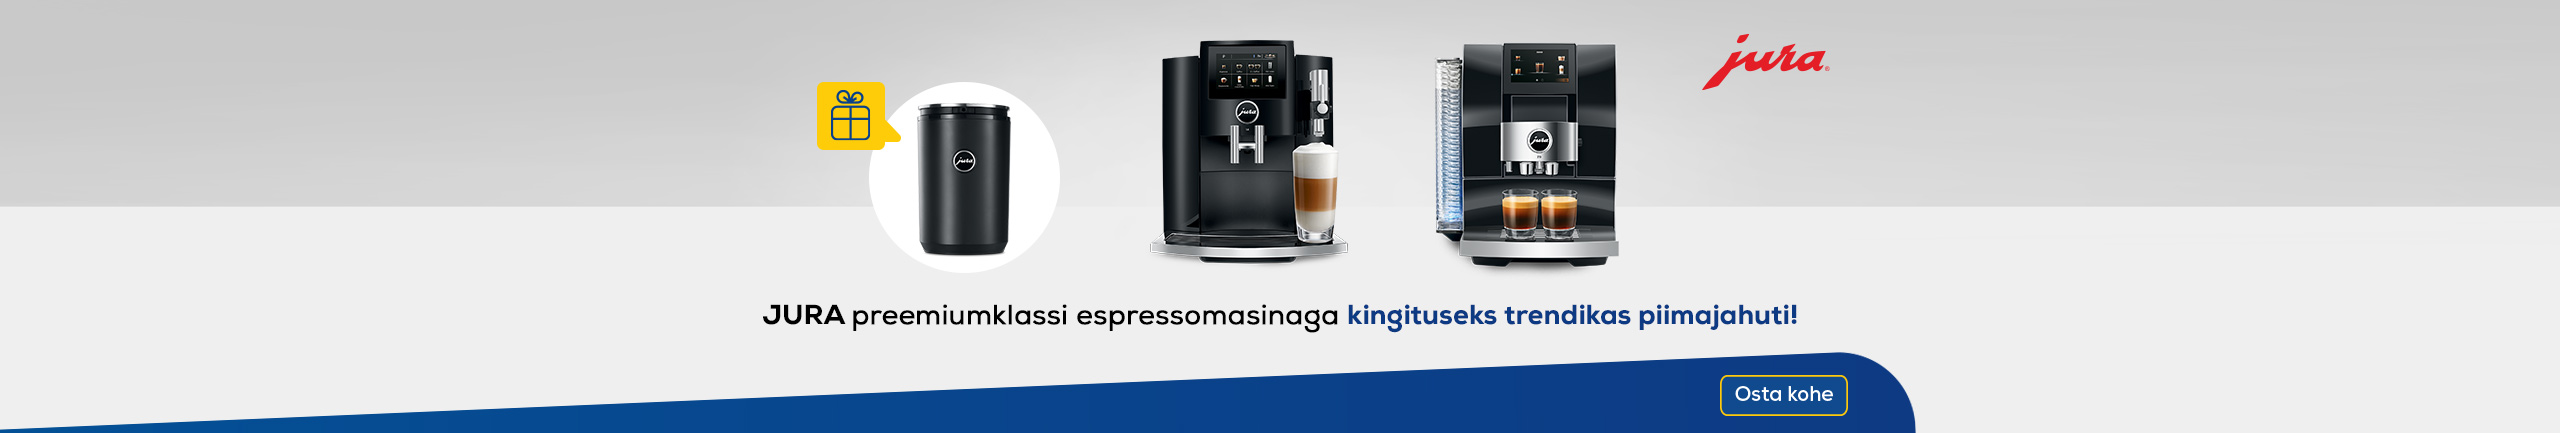 JURA preemiumklassi espressomasinaga kingituseks trendiks piimajahuti!